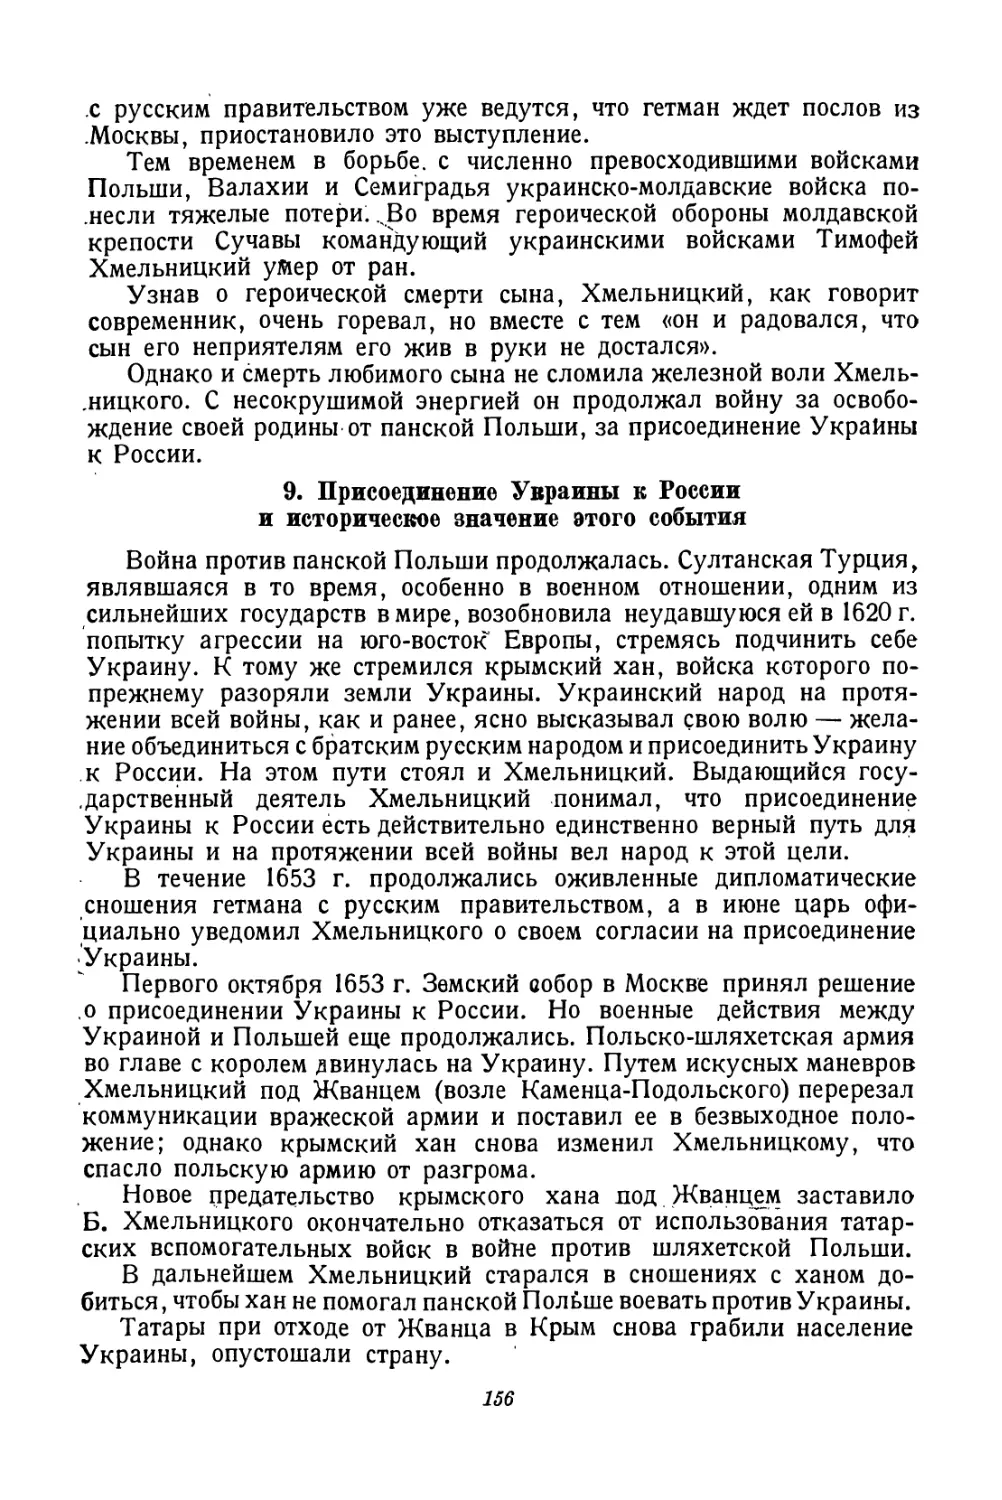 9. Присоединение Украины к России и историческое значение этого события